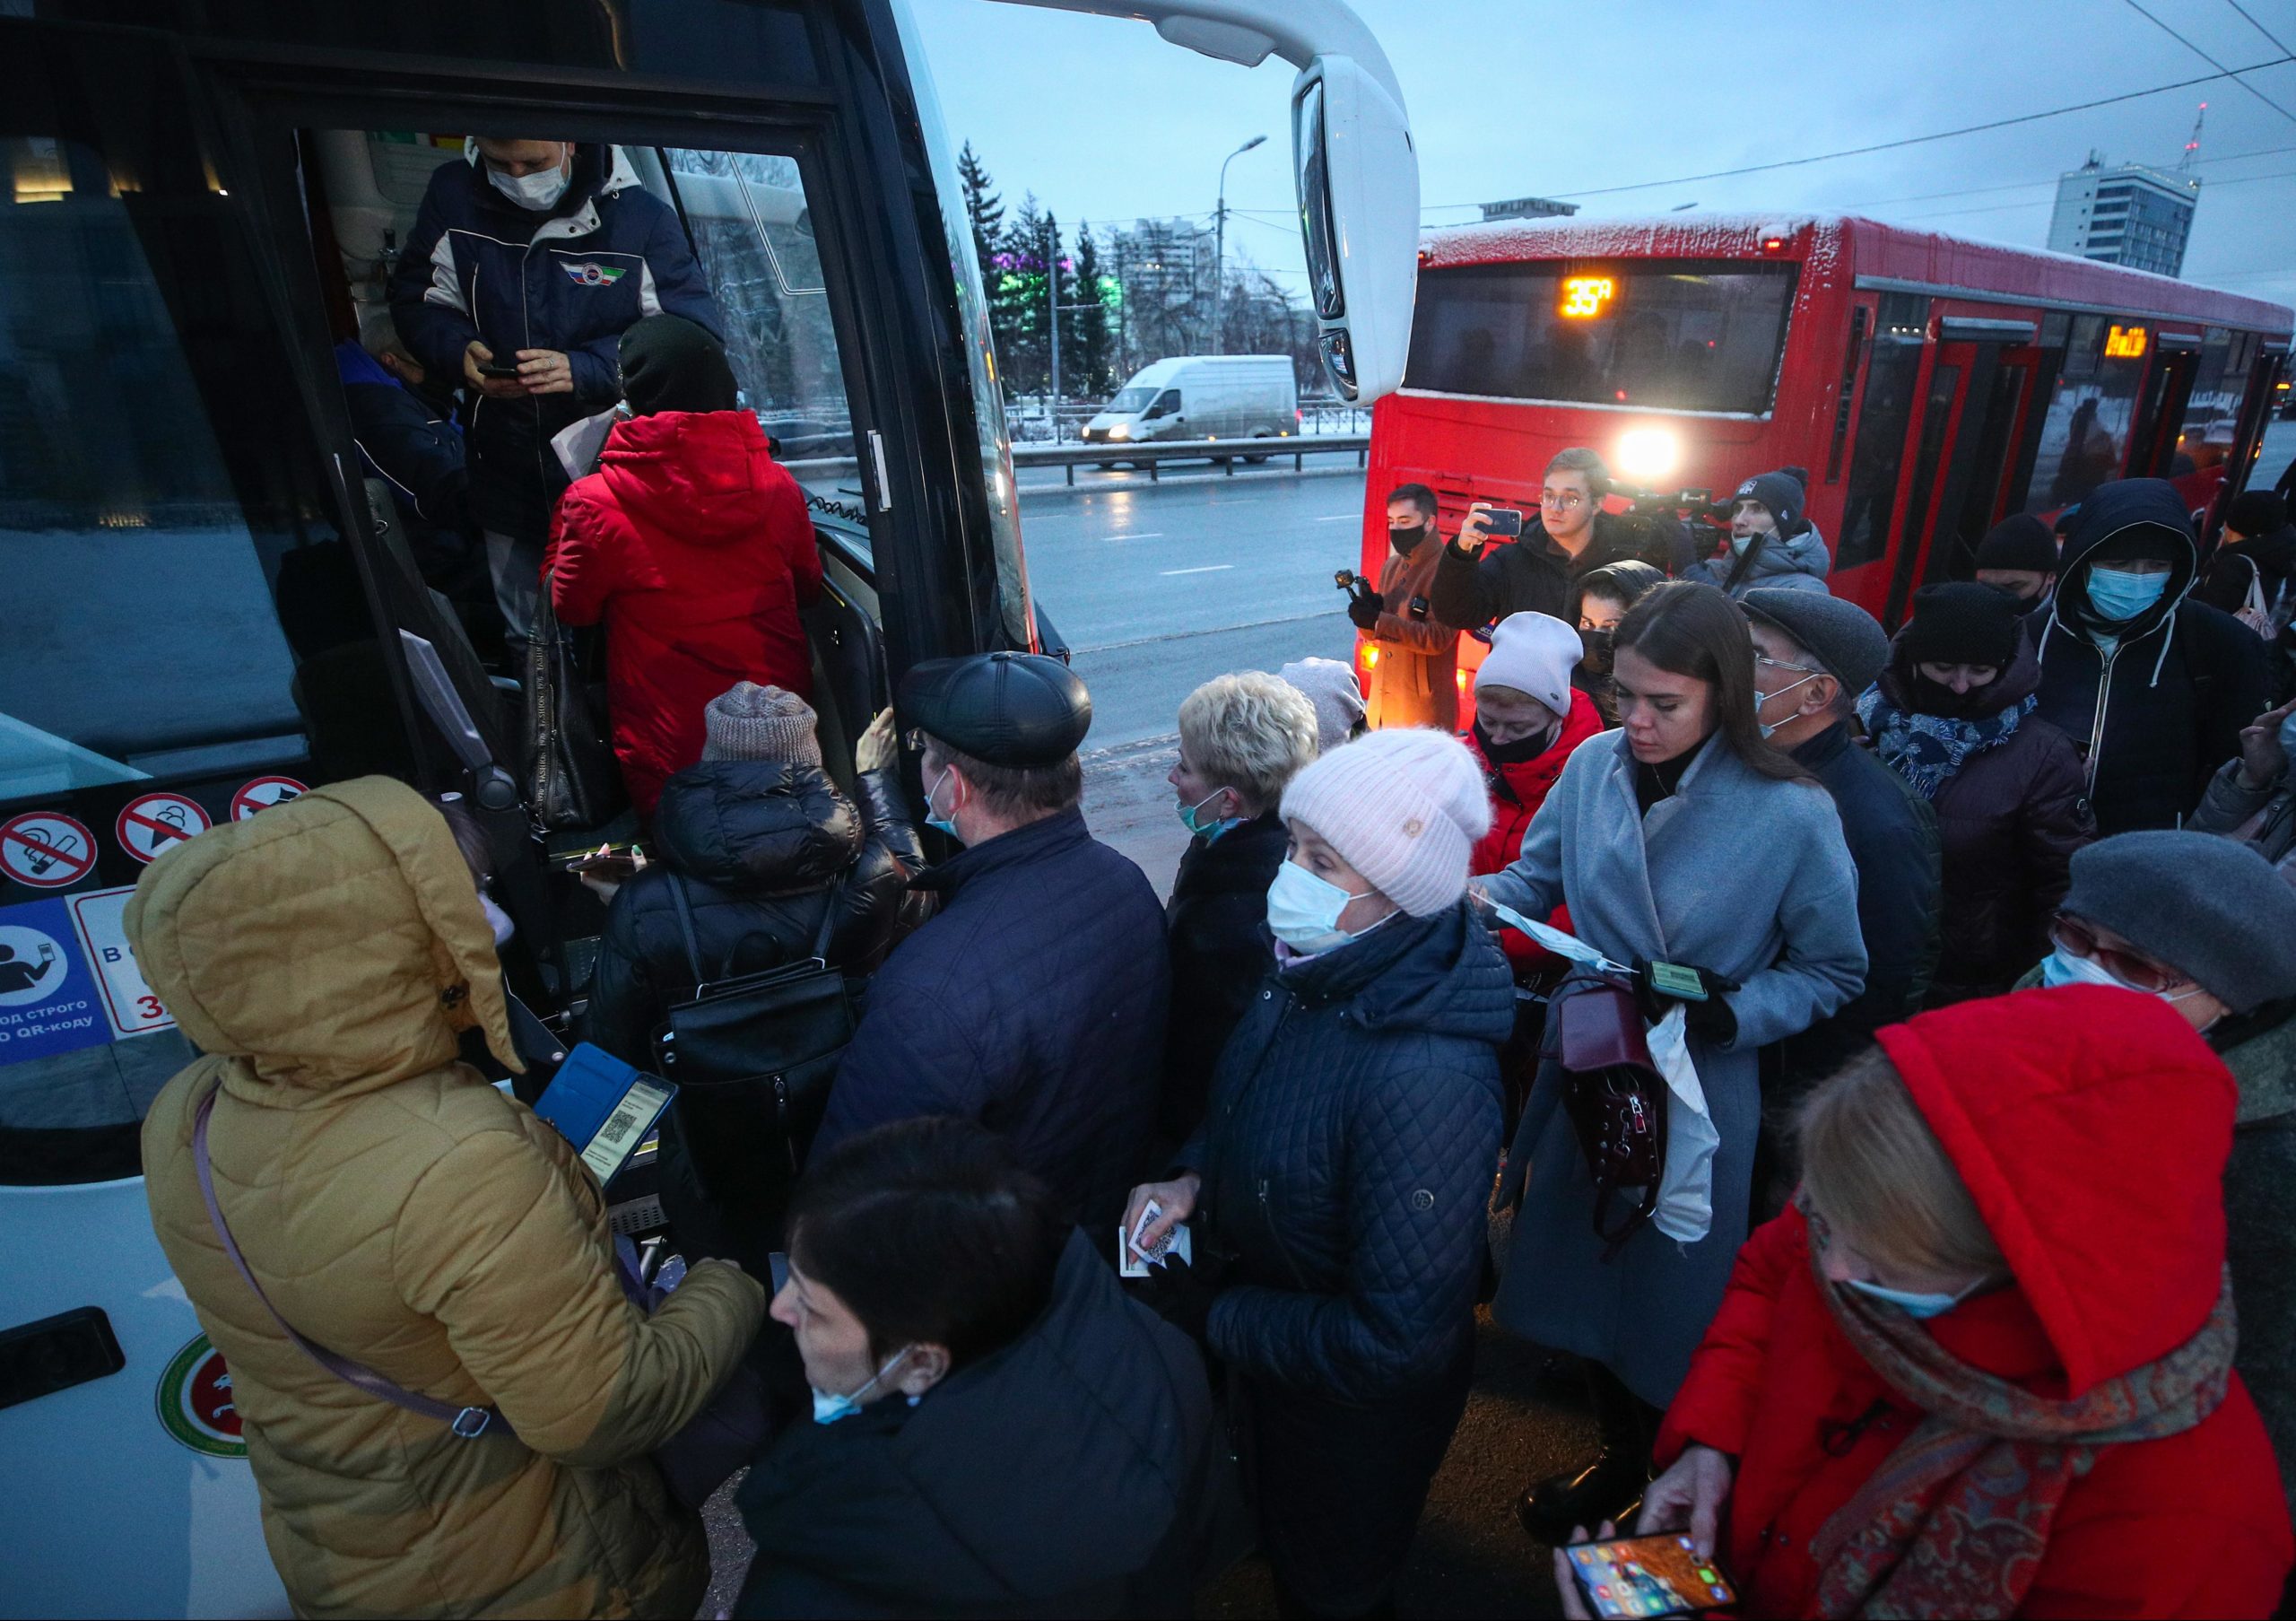 22 ноября 2019. Пассажиры общественного транспорта. Люди в автобусе. Пассажиры в автобусах Казани. Скандал в автобусе.